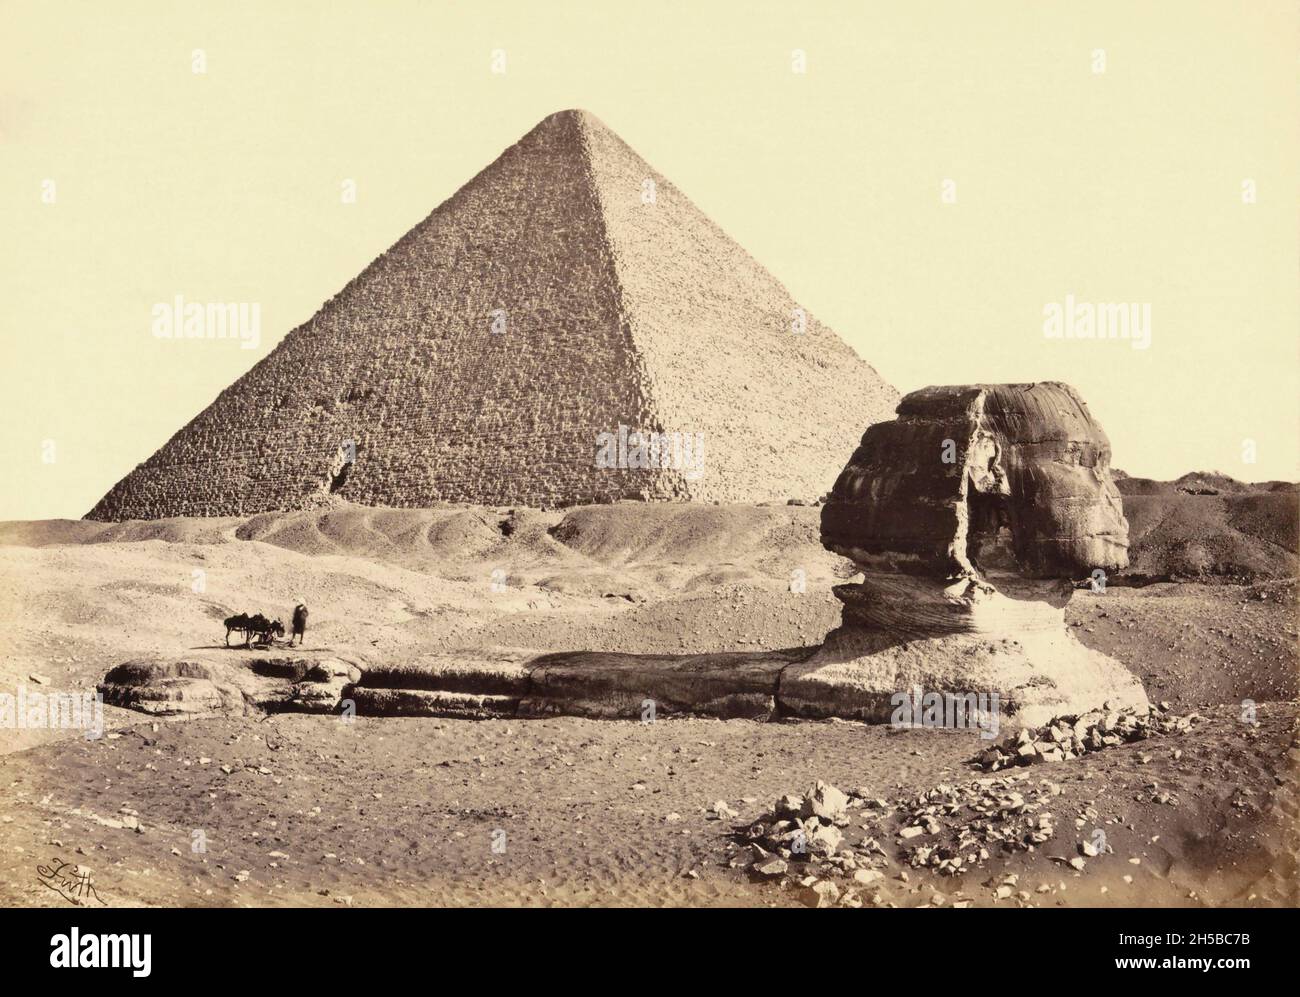 Die große Pyramide von Gizeh, manchmal auch die Pyramide von Khufu oder die Pyramide von Cheops genannt, die größte der Gizeh Pyramidenkomplex in Gizeh, außerhalb von Kairo, Ägypten. Im Vordergrund die große Sphinx von Gizeh. Mitte des 19. Jahrhunderts, als dieses Bild vom englischen Fotografen Francis Frith aufgenommen wurde, wurde die Sphinx noch nur teilweise ausgegraben. Die Pyramiden und Sphinx gehören heute zum UNESCO-Weltkulturerbe. Stockfoto